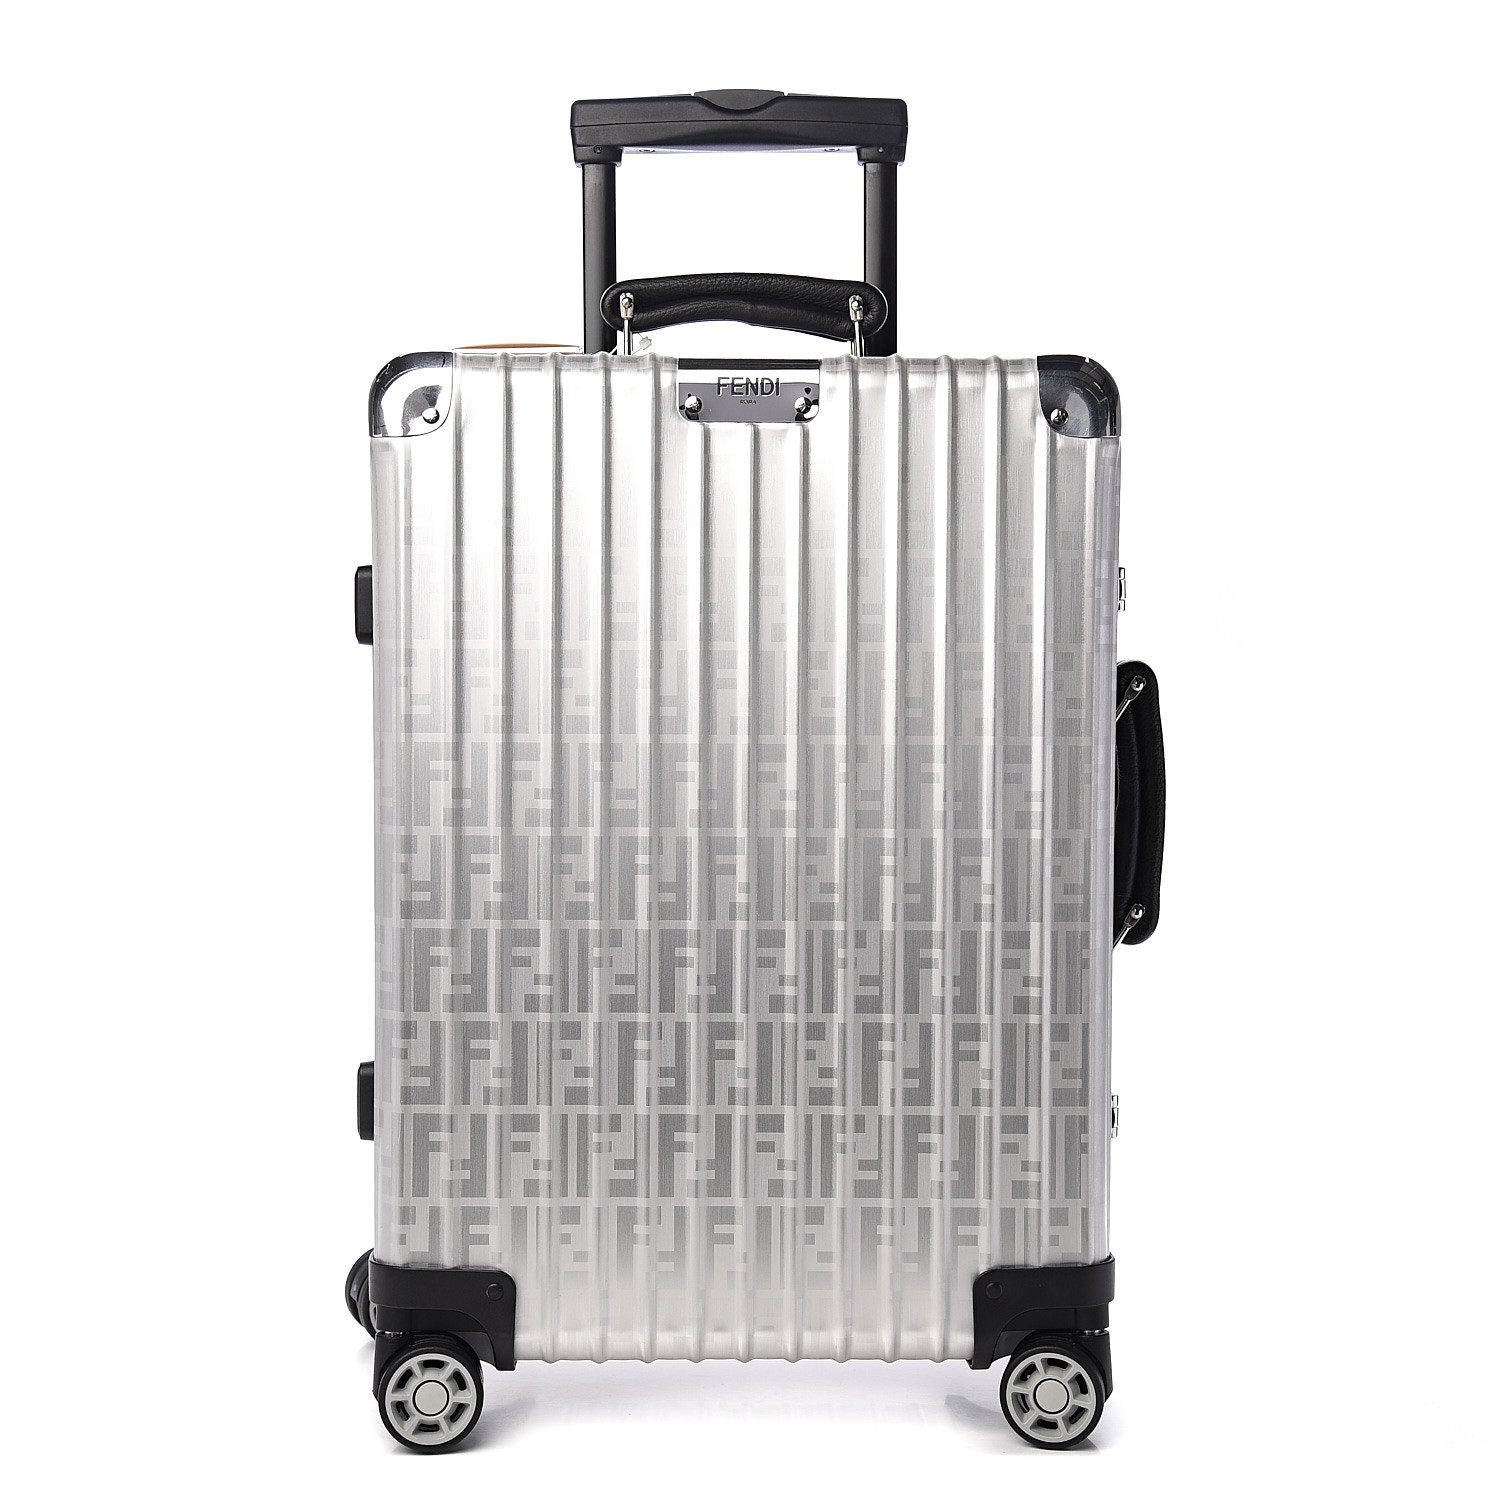 fendi carry on luggage